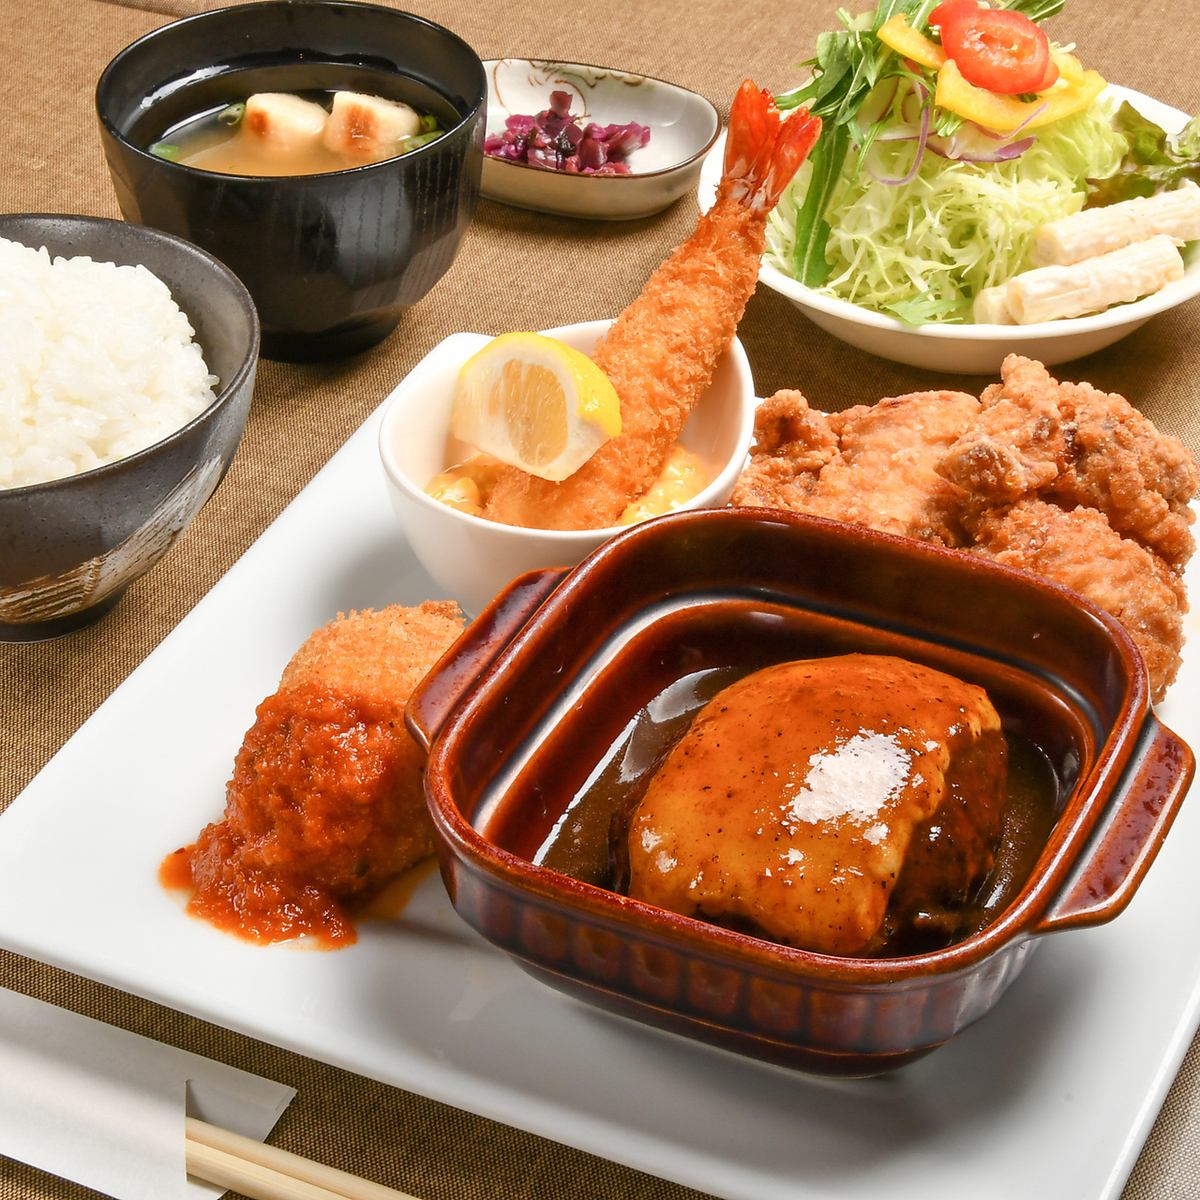 京野菜と洋食を融合させたお店♪金閣寺のそばで、心のこもったおいしい洋食を。